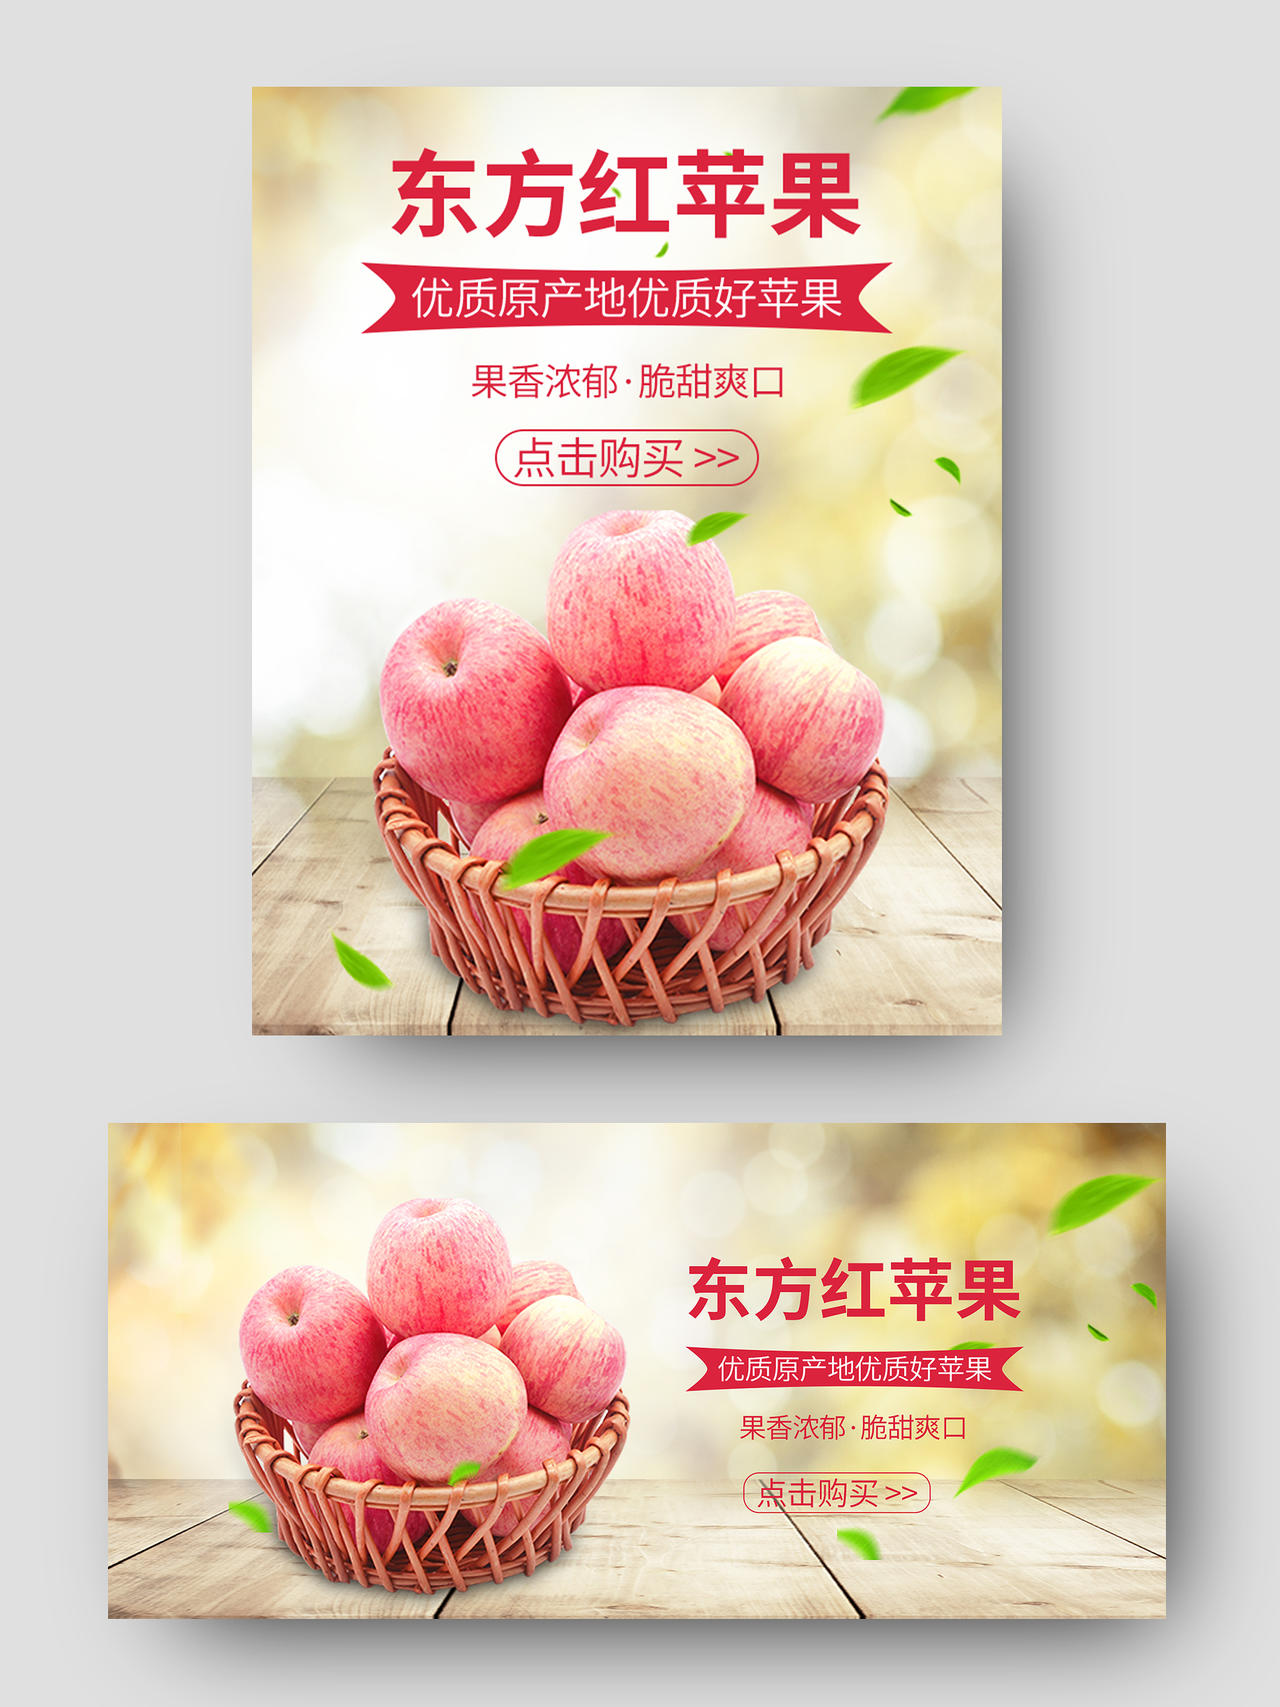 土黄色清新简约水果苹果东方红苹果活动促销海报banner